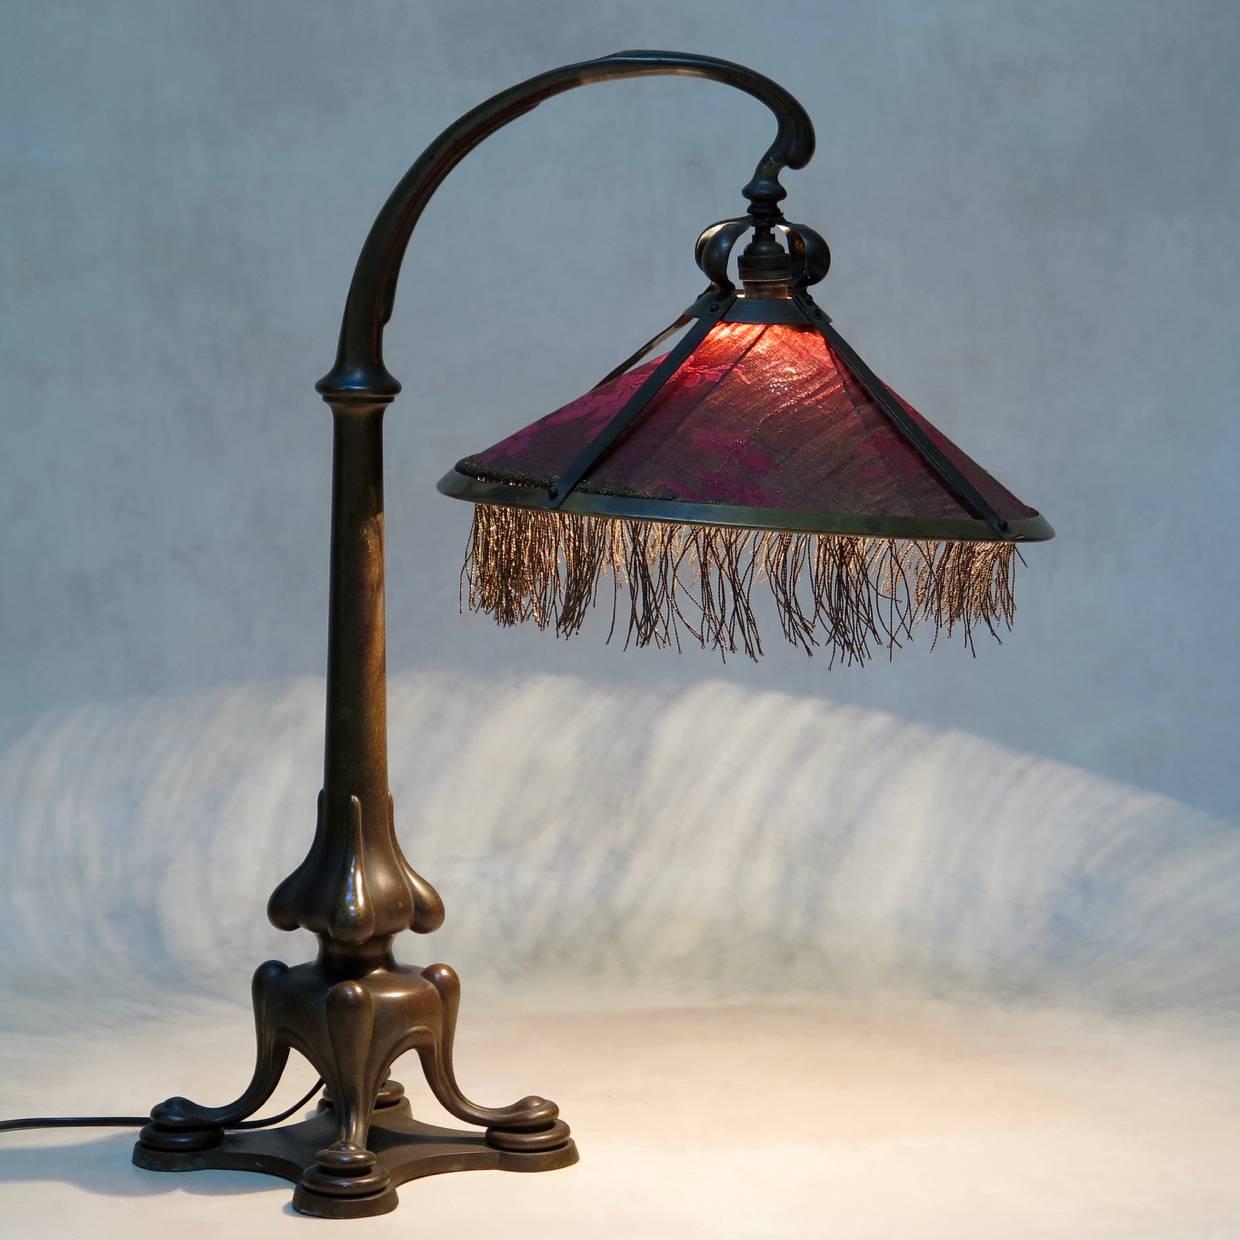 Lampe de bureau élégante et lourde, fabriquée en bronze et équipée d'un abat-jour rose crépusculaire et fil métallique.